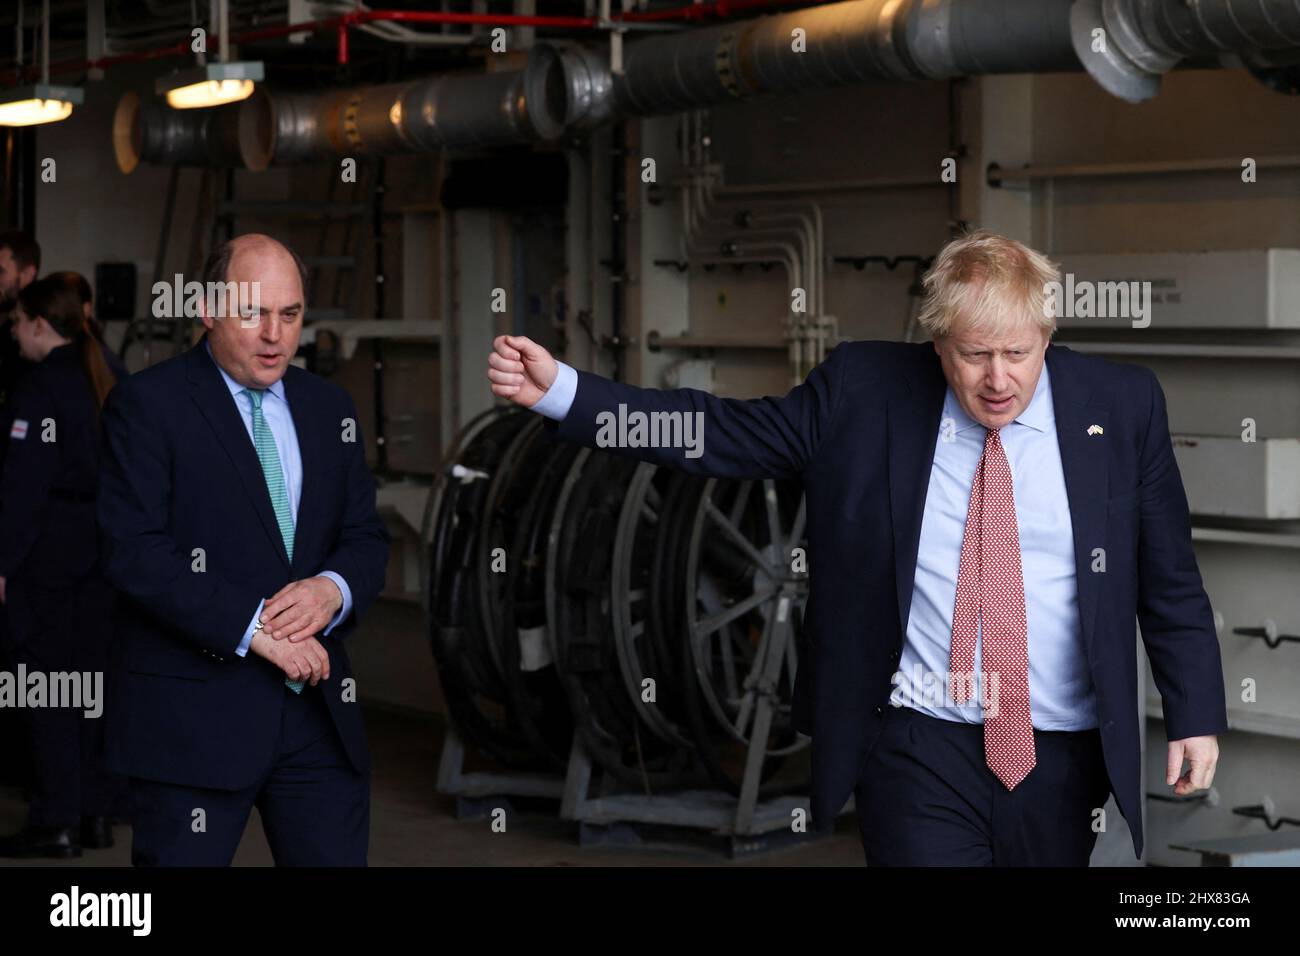 Premierminister Boris Johnson (rechts) und Verteidigungsminister Ben Wallace an Bord von HMS Dauntless, einem Typ-45-Zerstörer der Royal Navy, der eine Umrüstung erfahren hat, während er die Cammell Laird-Werft in Merseyside besucht. Bilddatum: Donnerstag, 10. März 2022. Stockfoto